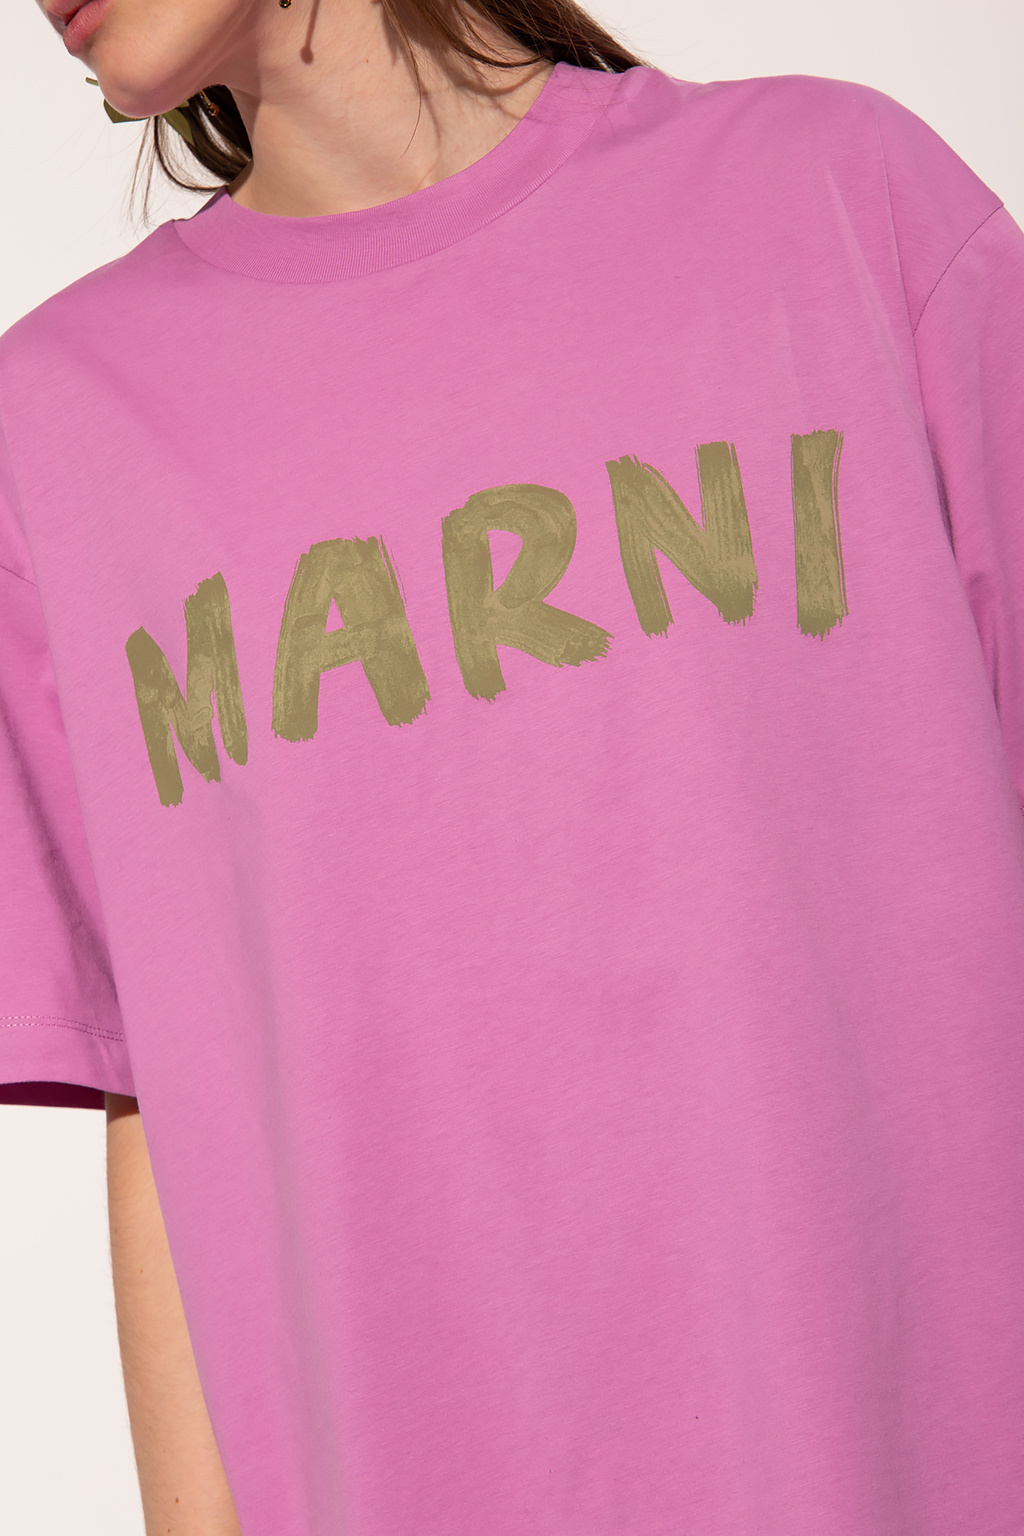 Marni marni floral print boxers item